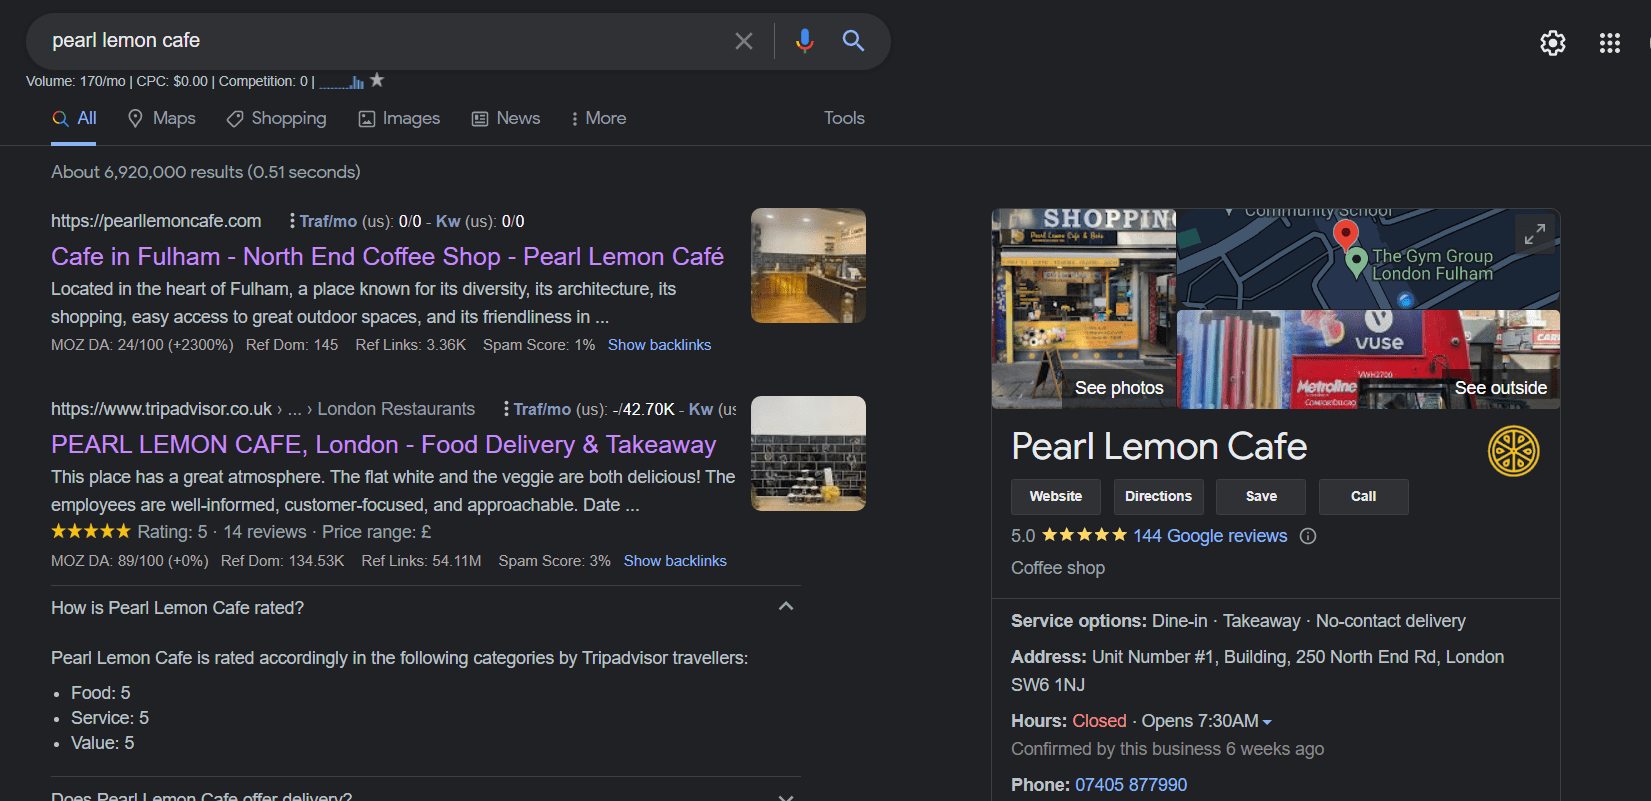 pearl lemon cafe search